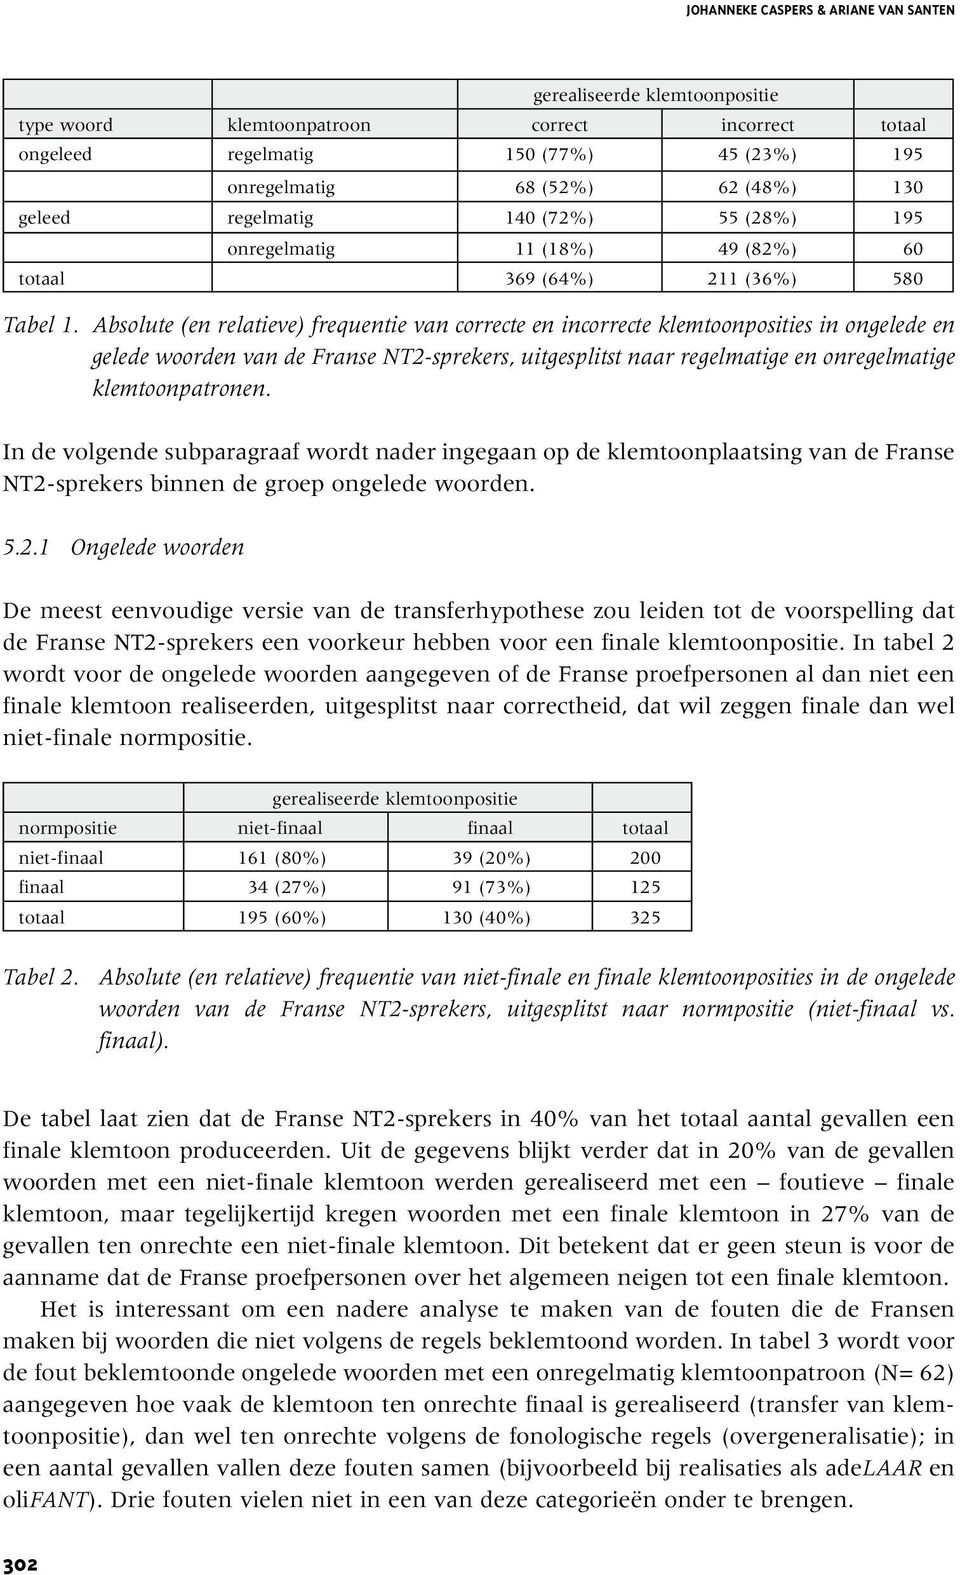 Absolute (en relatieve) frequentie van correcte en incorrecte klemtoonposities in ongelede en gelede woorden van de Franse NT2-sprekers, uitgesplitst naar regelmatige en onregelmatige